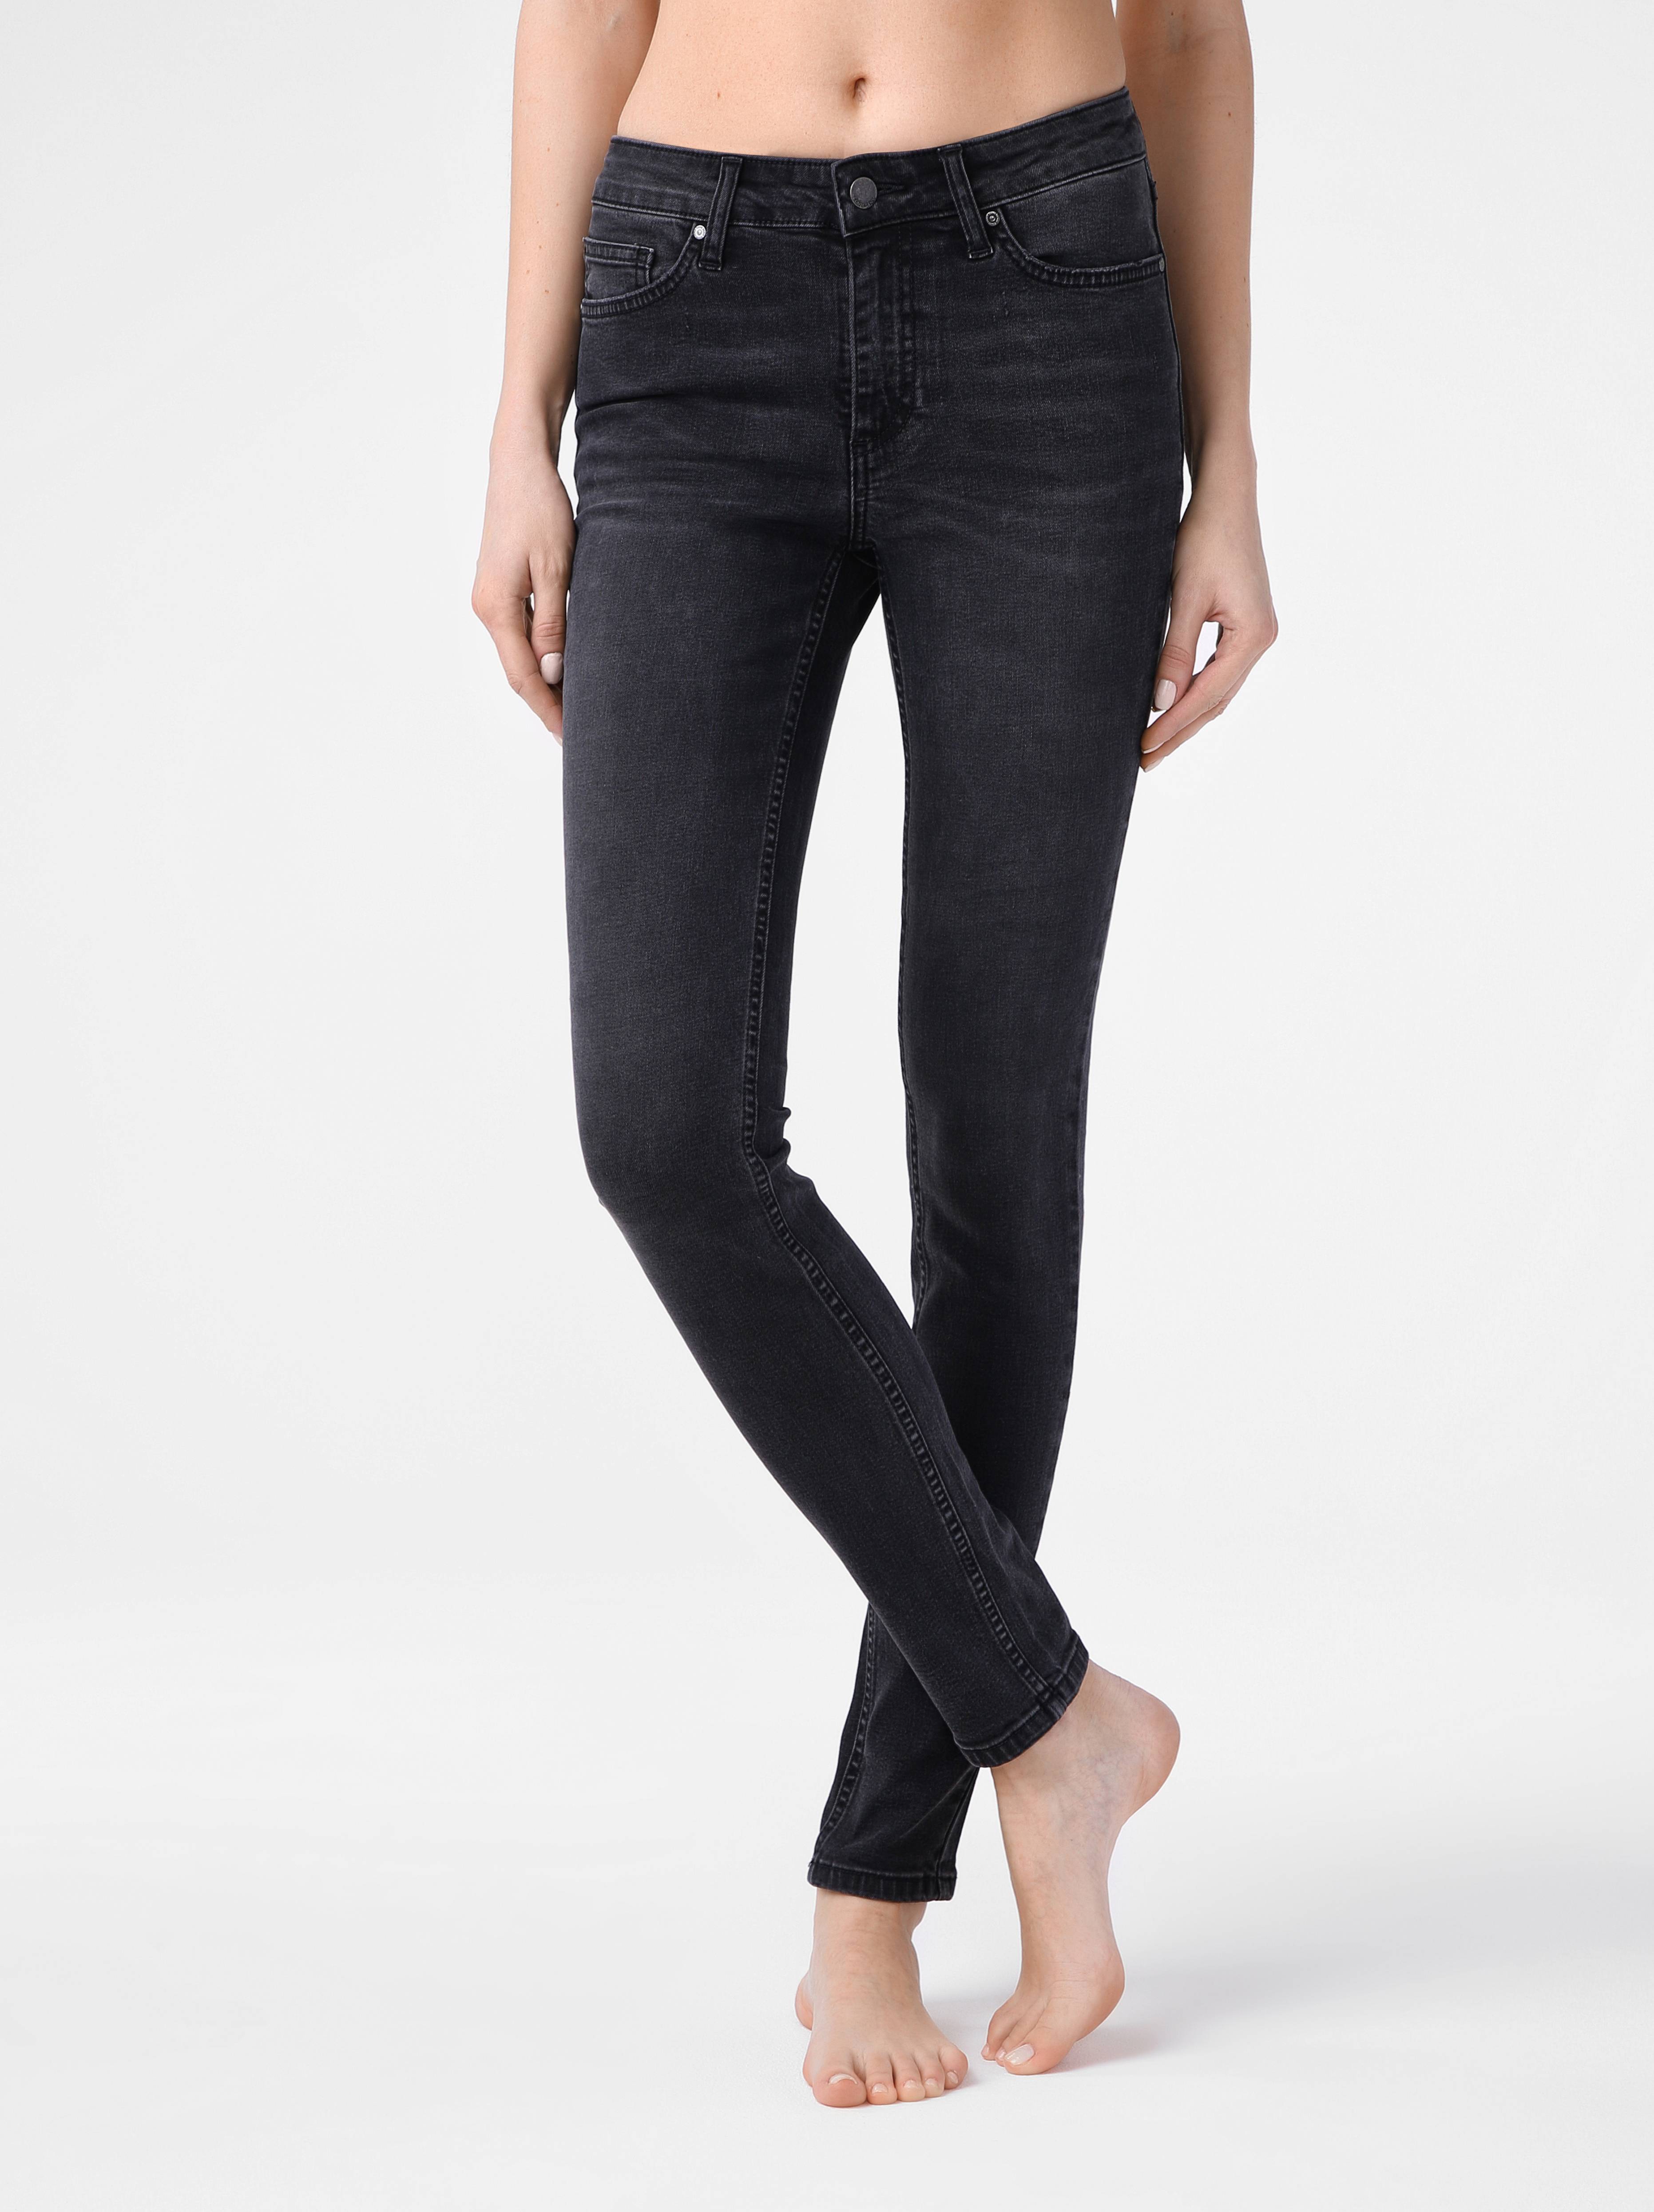 Моделирующие eco-friendly джинсы skinny со средней посадкой CON-150 Conte ⭐️, цвет washed black, размер 164-102 - фото 1